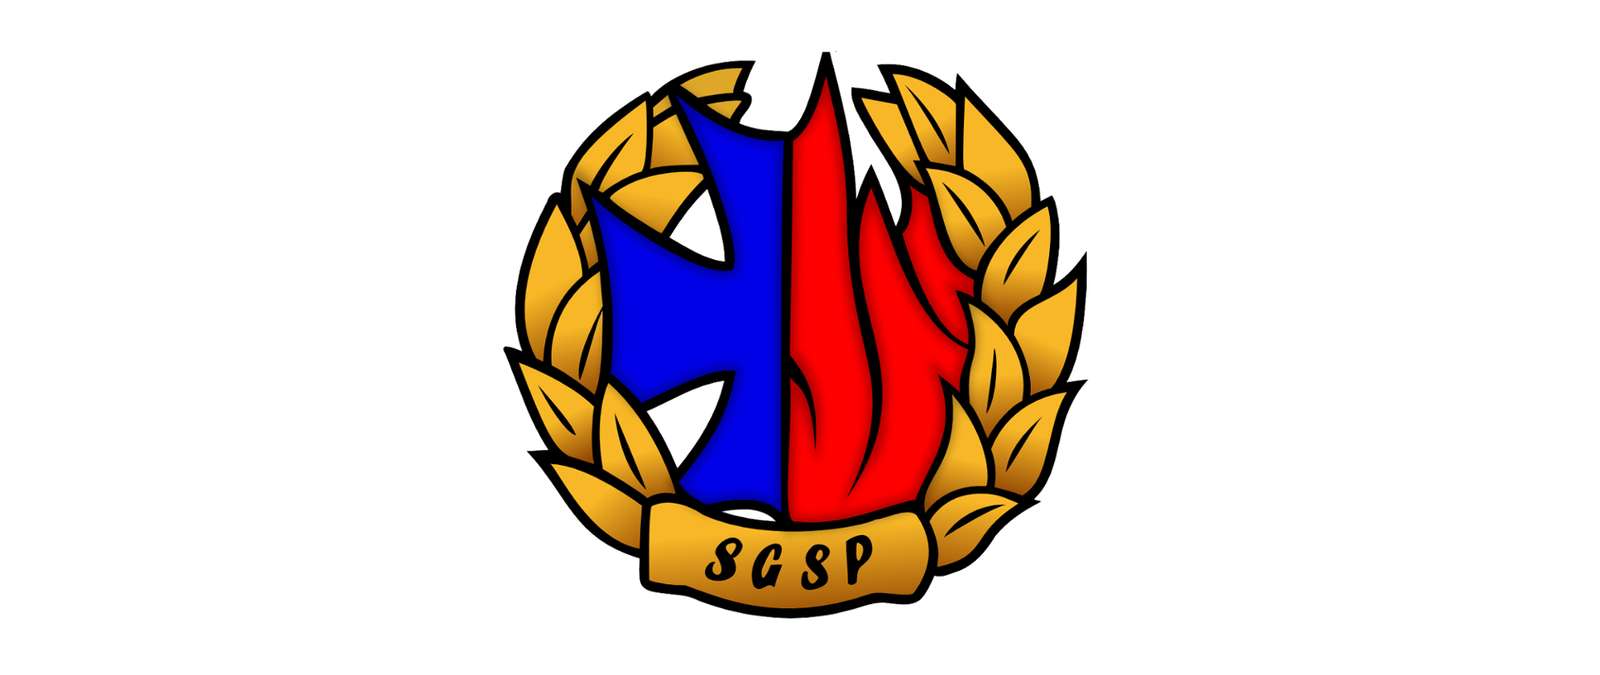 Λογότυπο Πυροσβεστικής Υπηρεσίας SGSP online παζλ